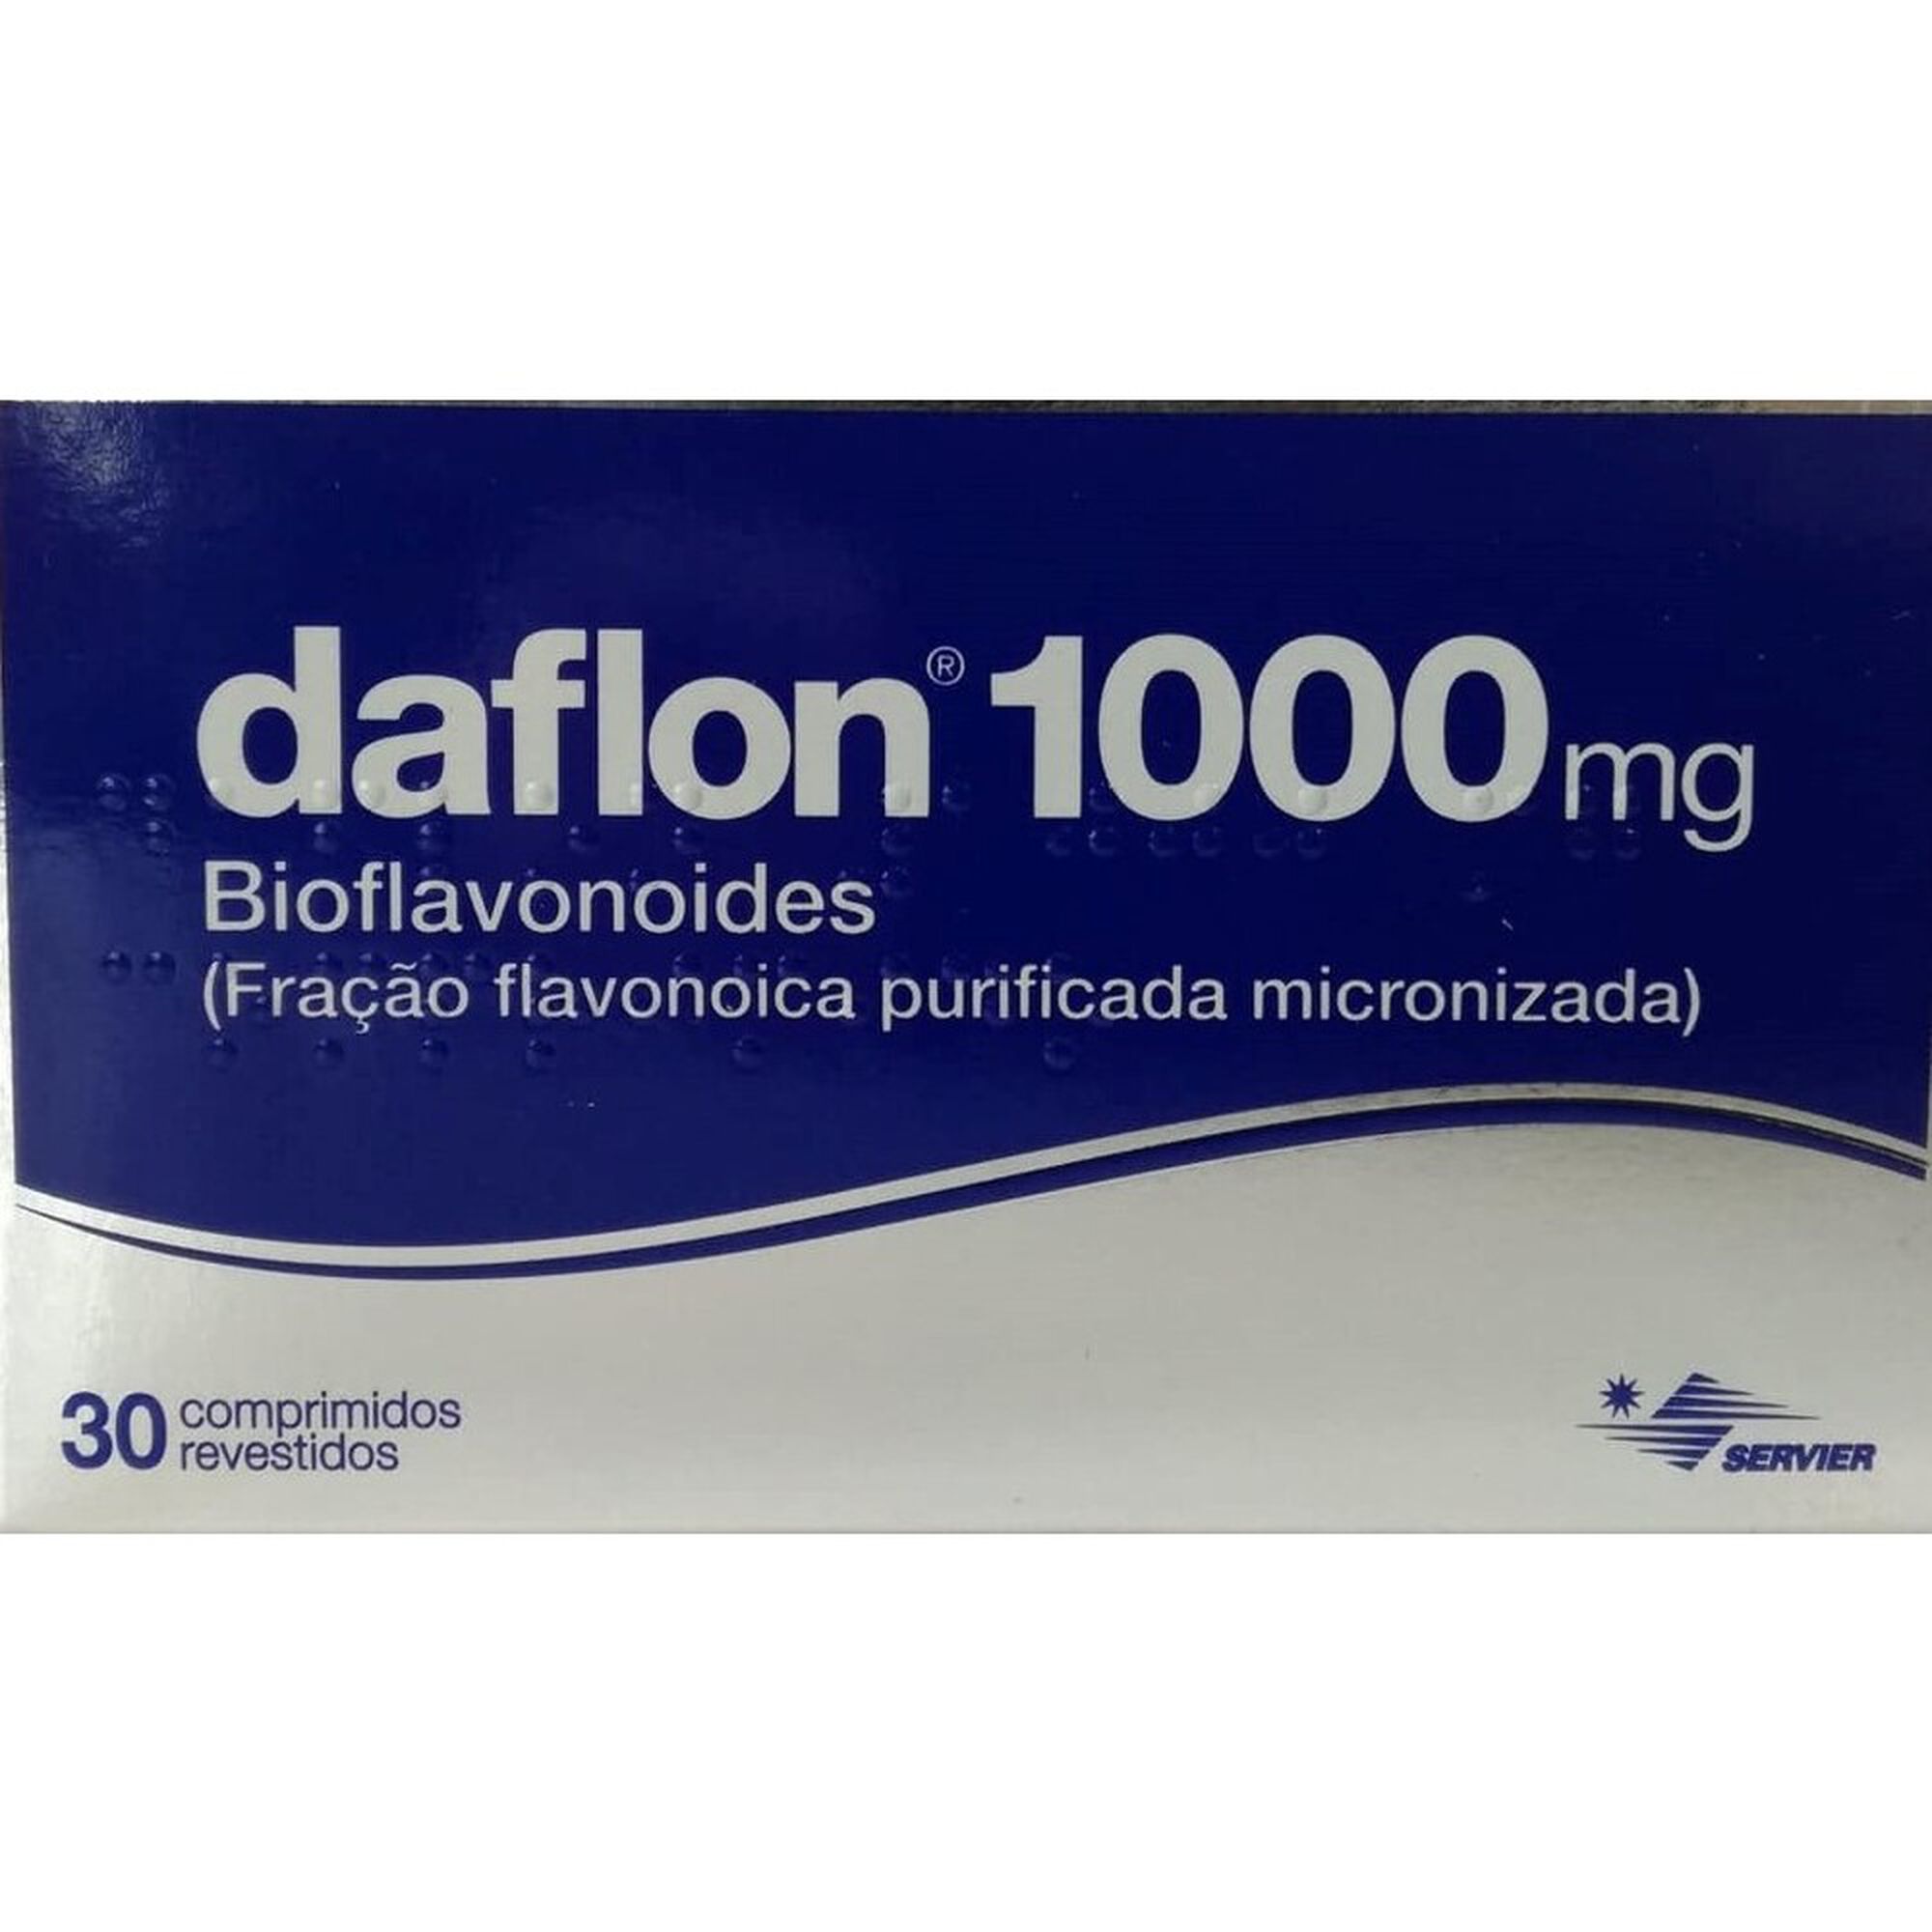 Daflon 1000 60 comprimidos